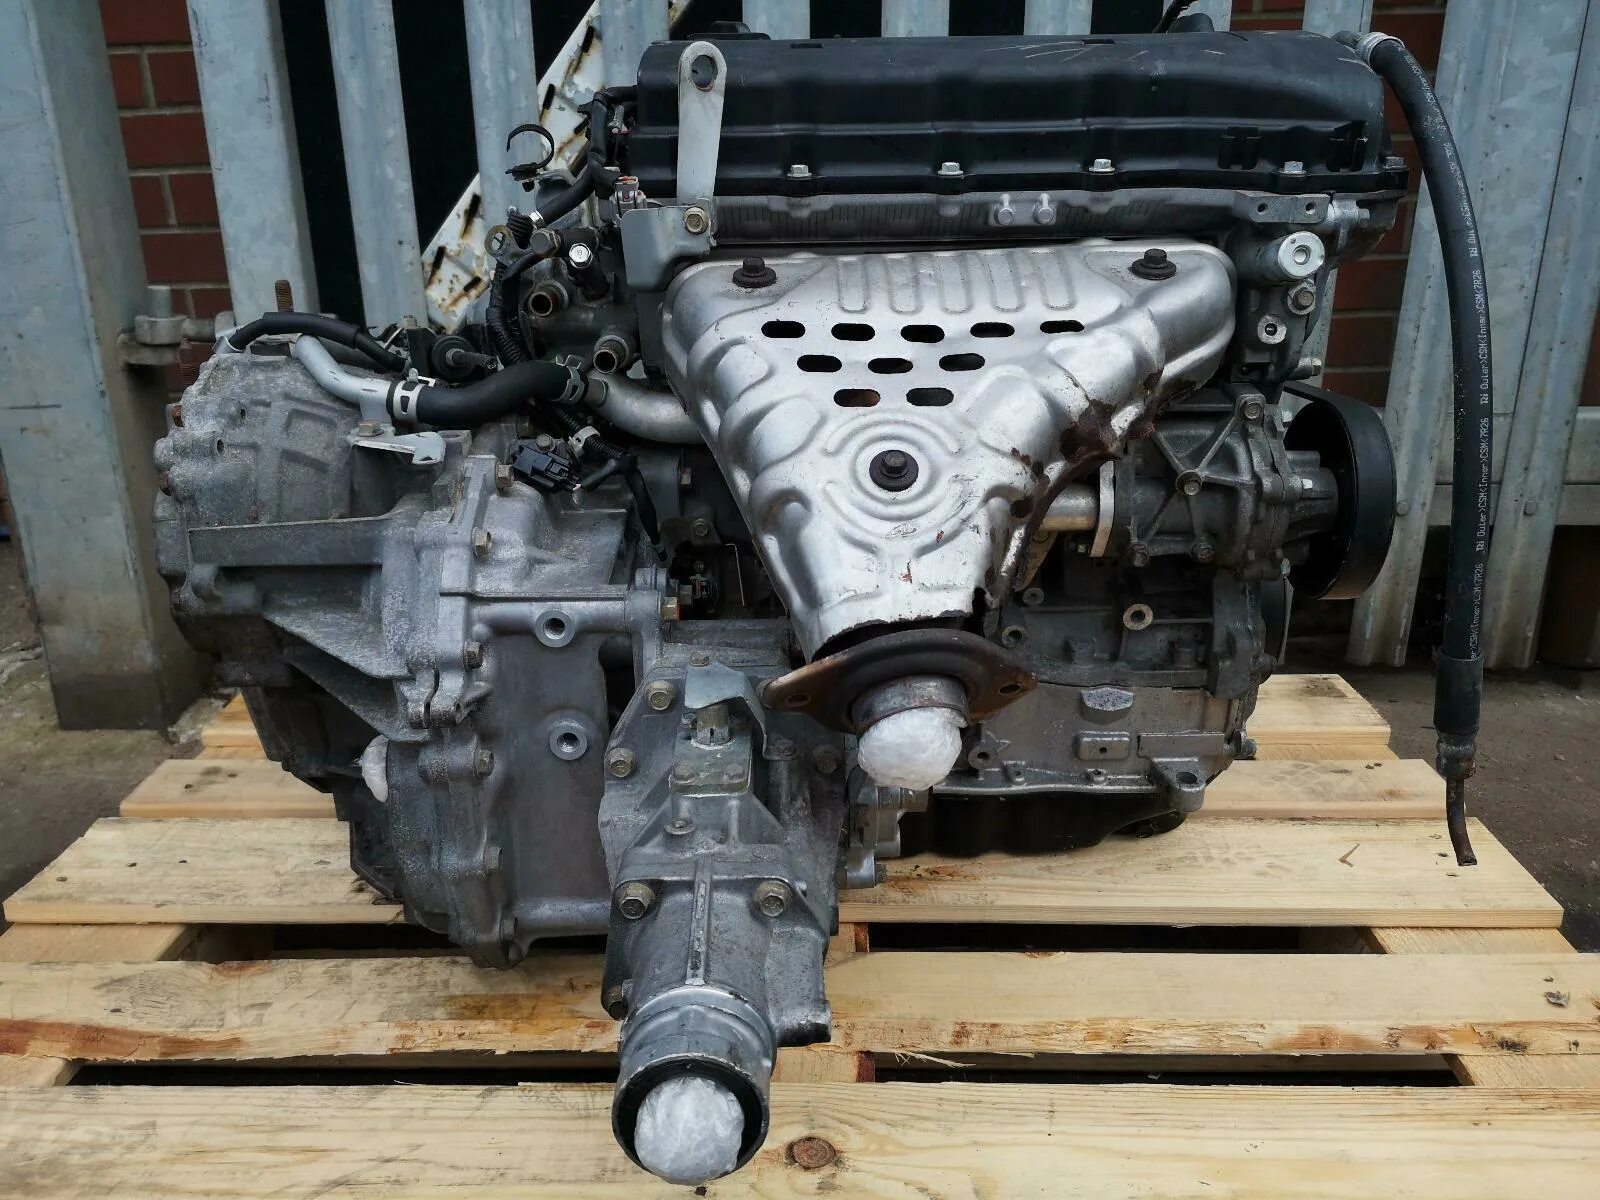 Мотор Аутлендер 2.4. 4 B12 двигатель Митсубиси. 4b12 мотор Outlander. Двигатель Митсубиси Аутлендер 2.4.